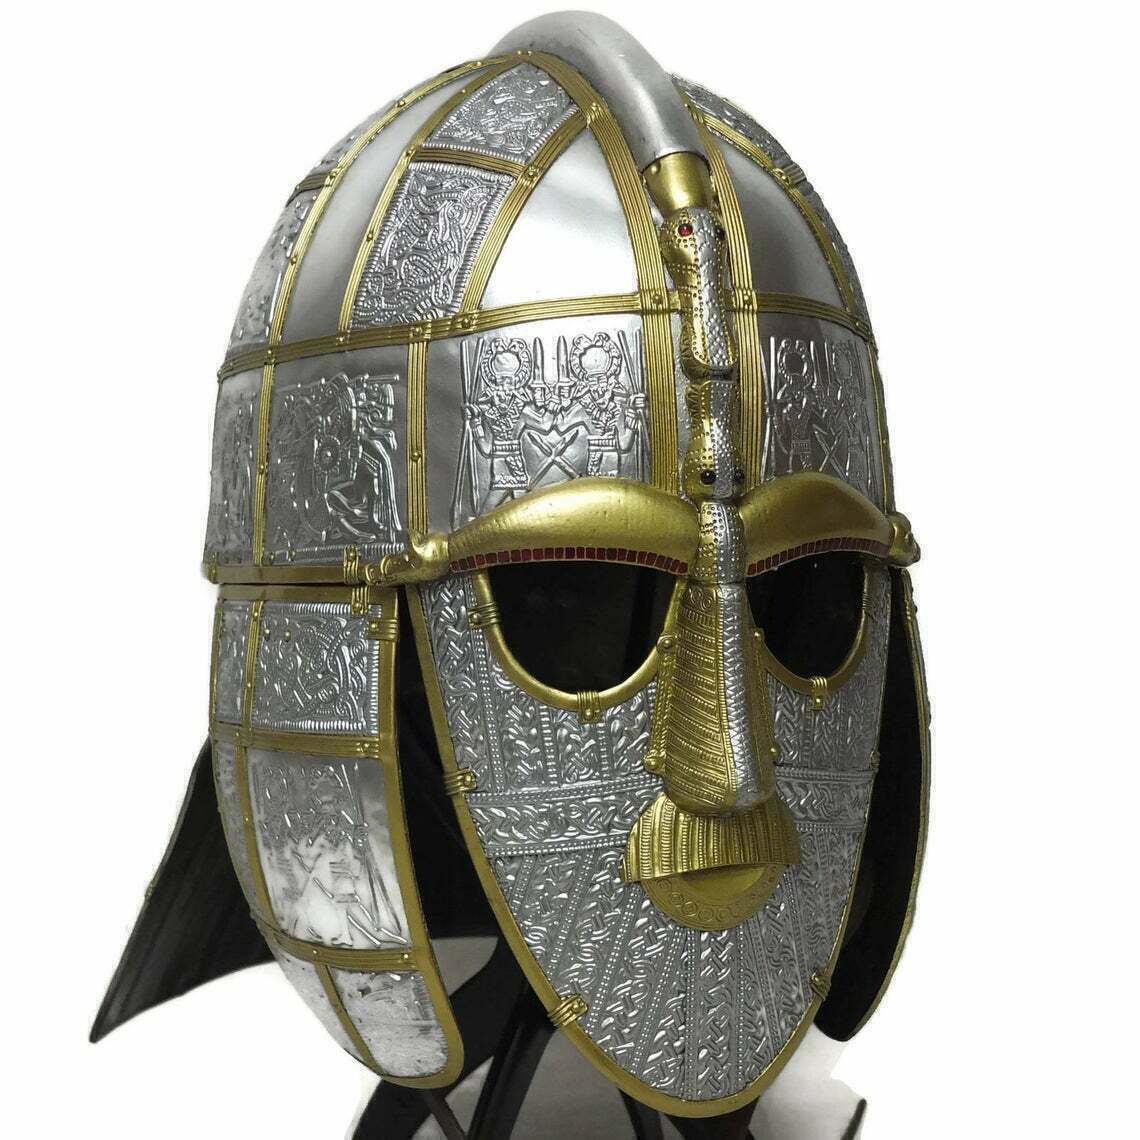 WEEKEND SALE Viking Sutton hoo helmet 7th Century Anglo Saxon Pre Viking helmet